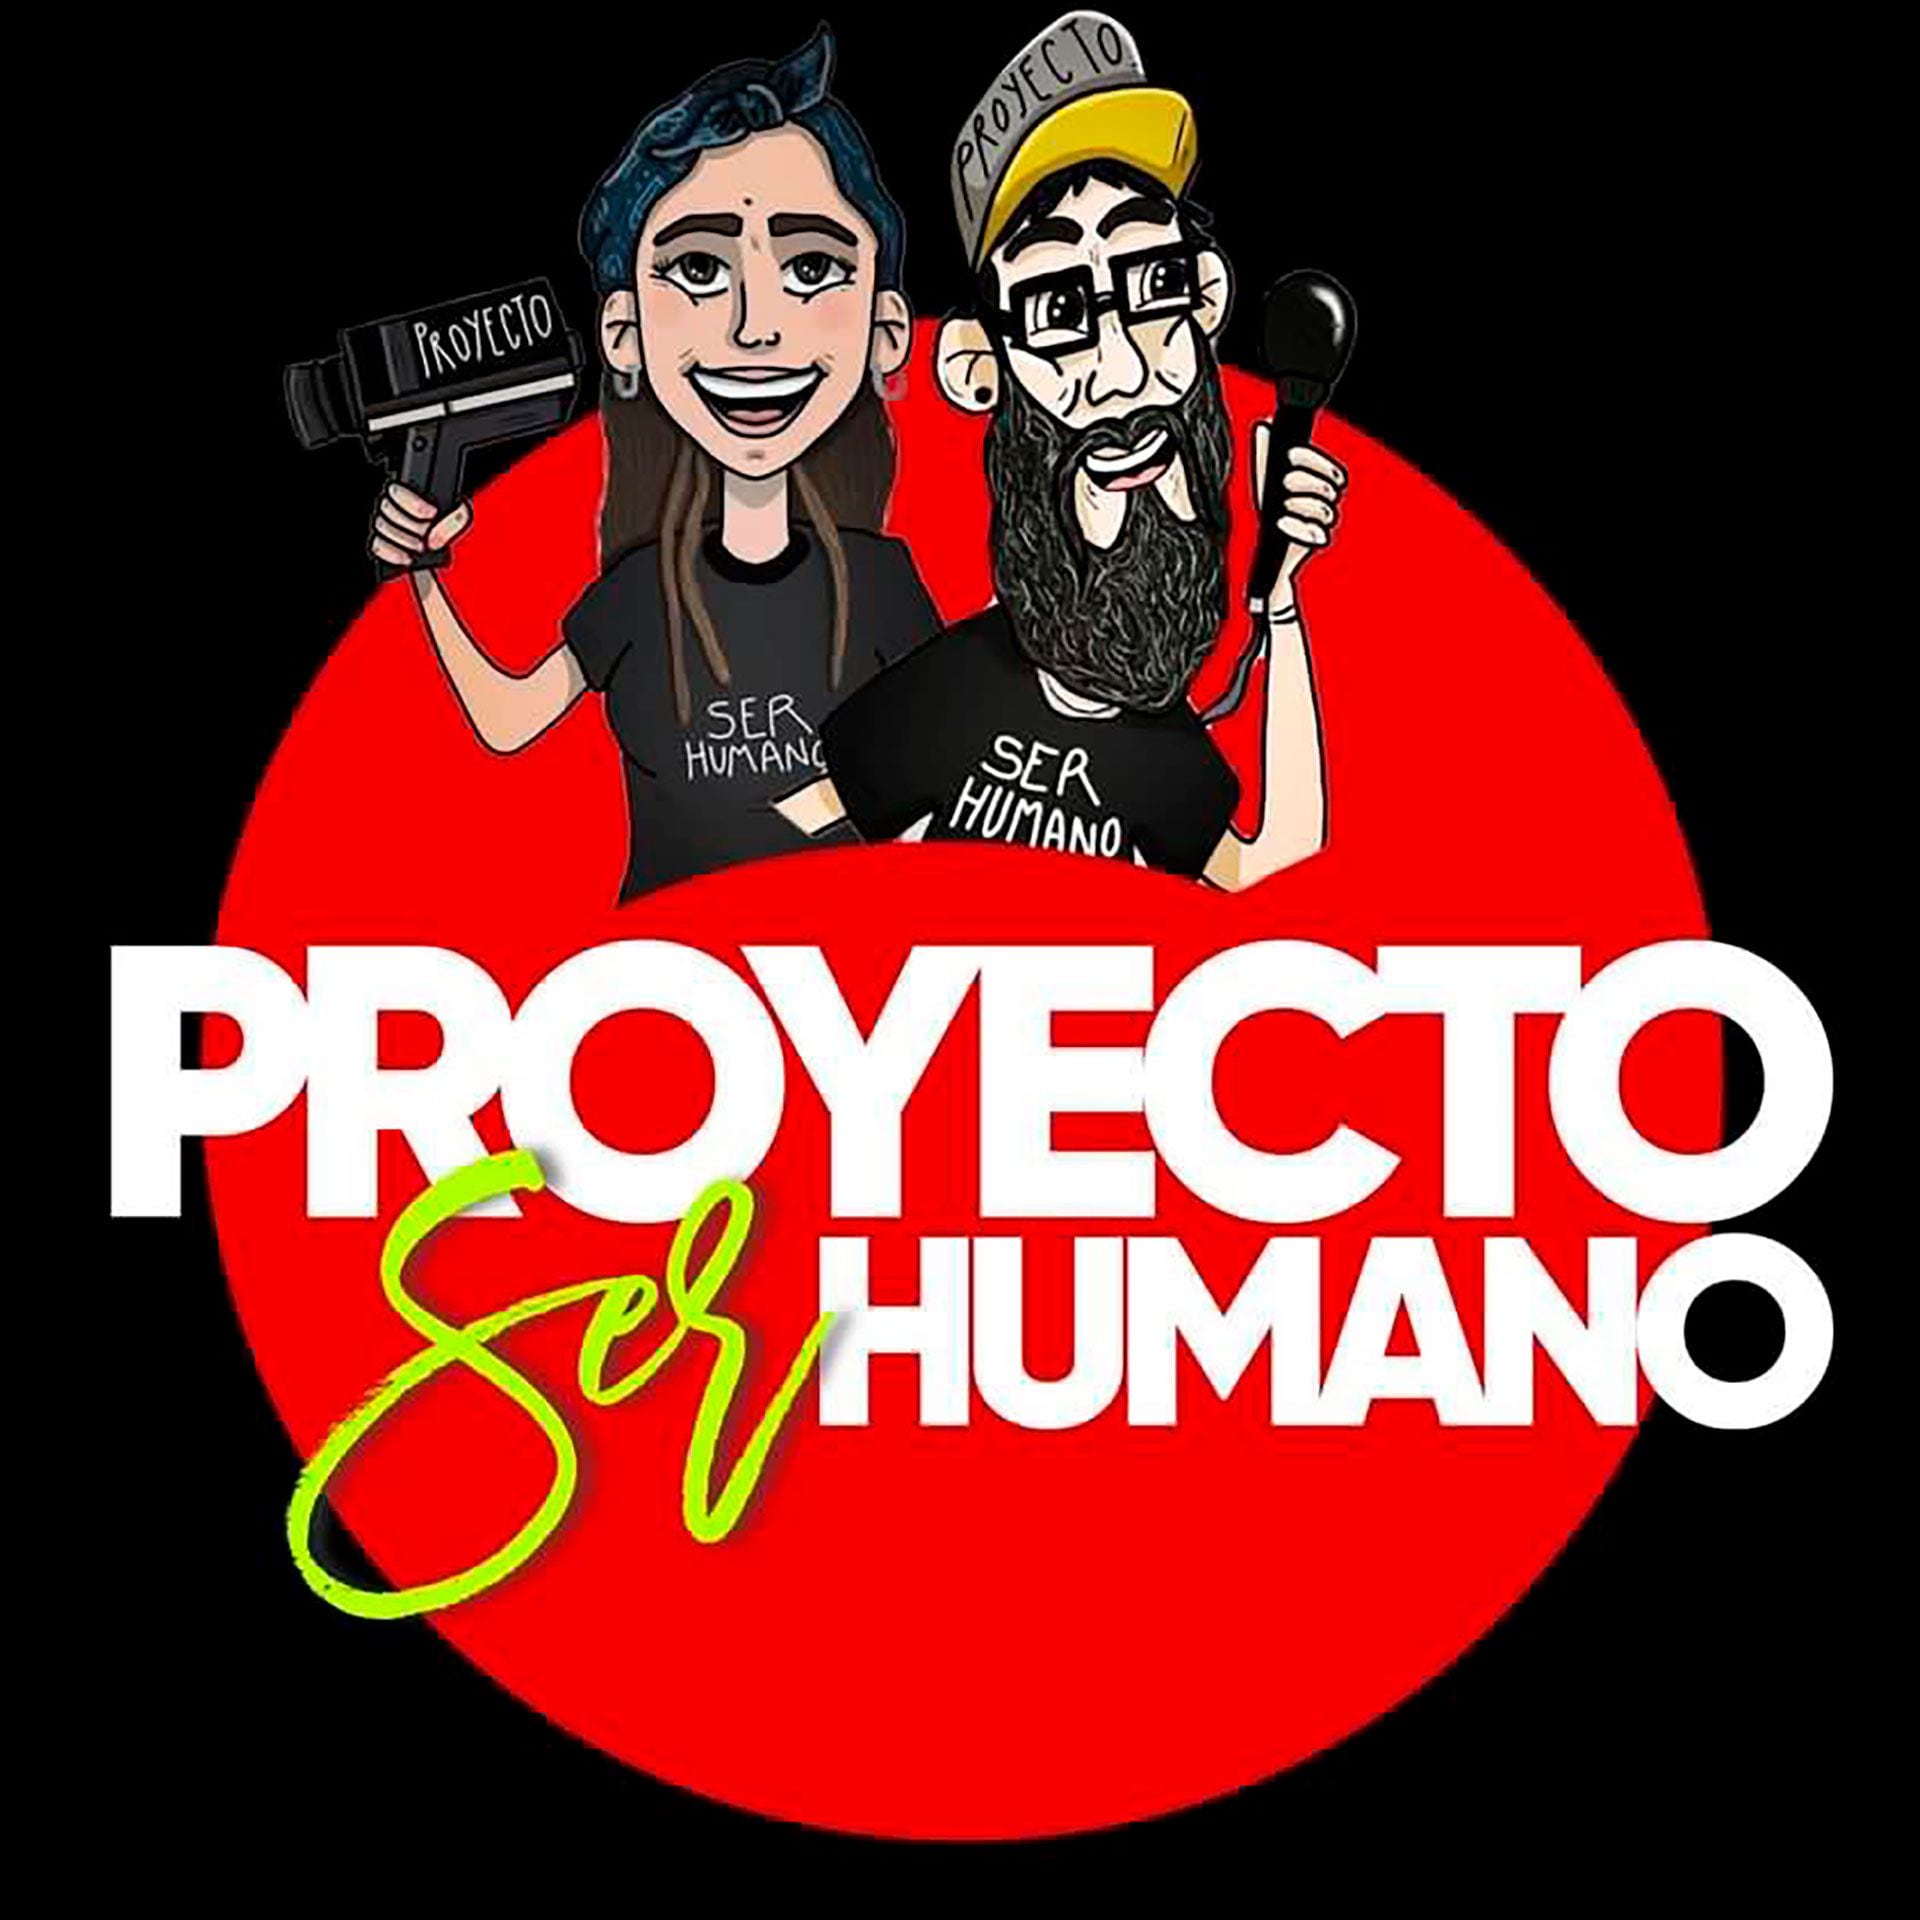 @hernan_danolfo y @agustinadanolfo están a cargo del Proyecto Ser Humano